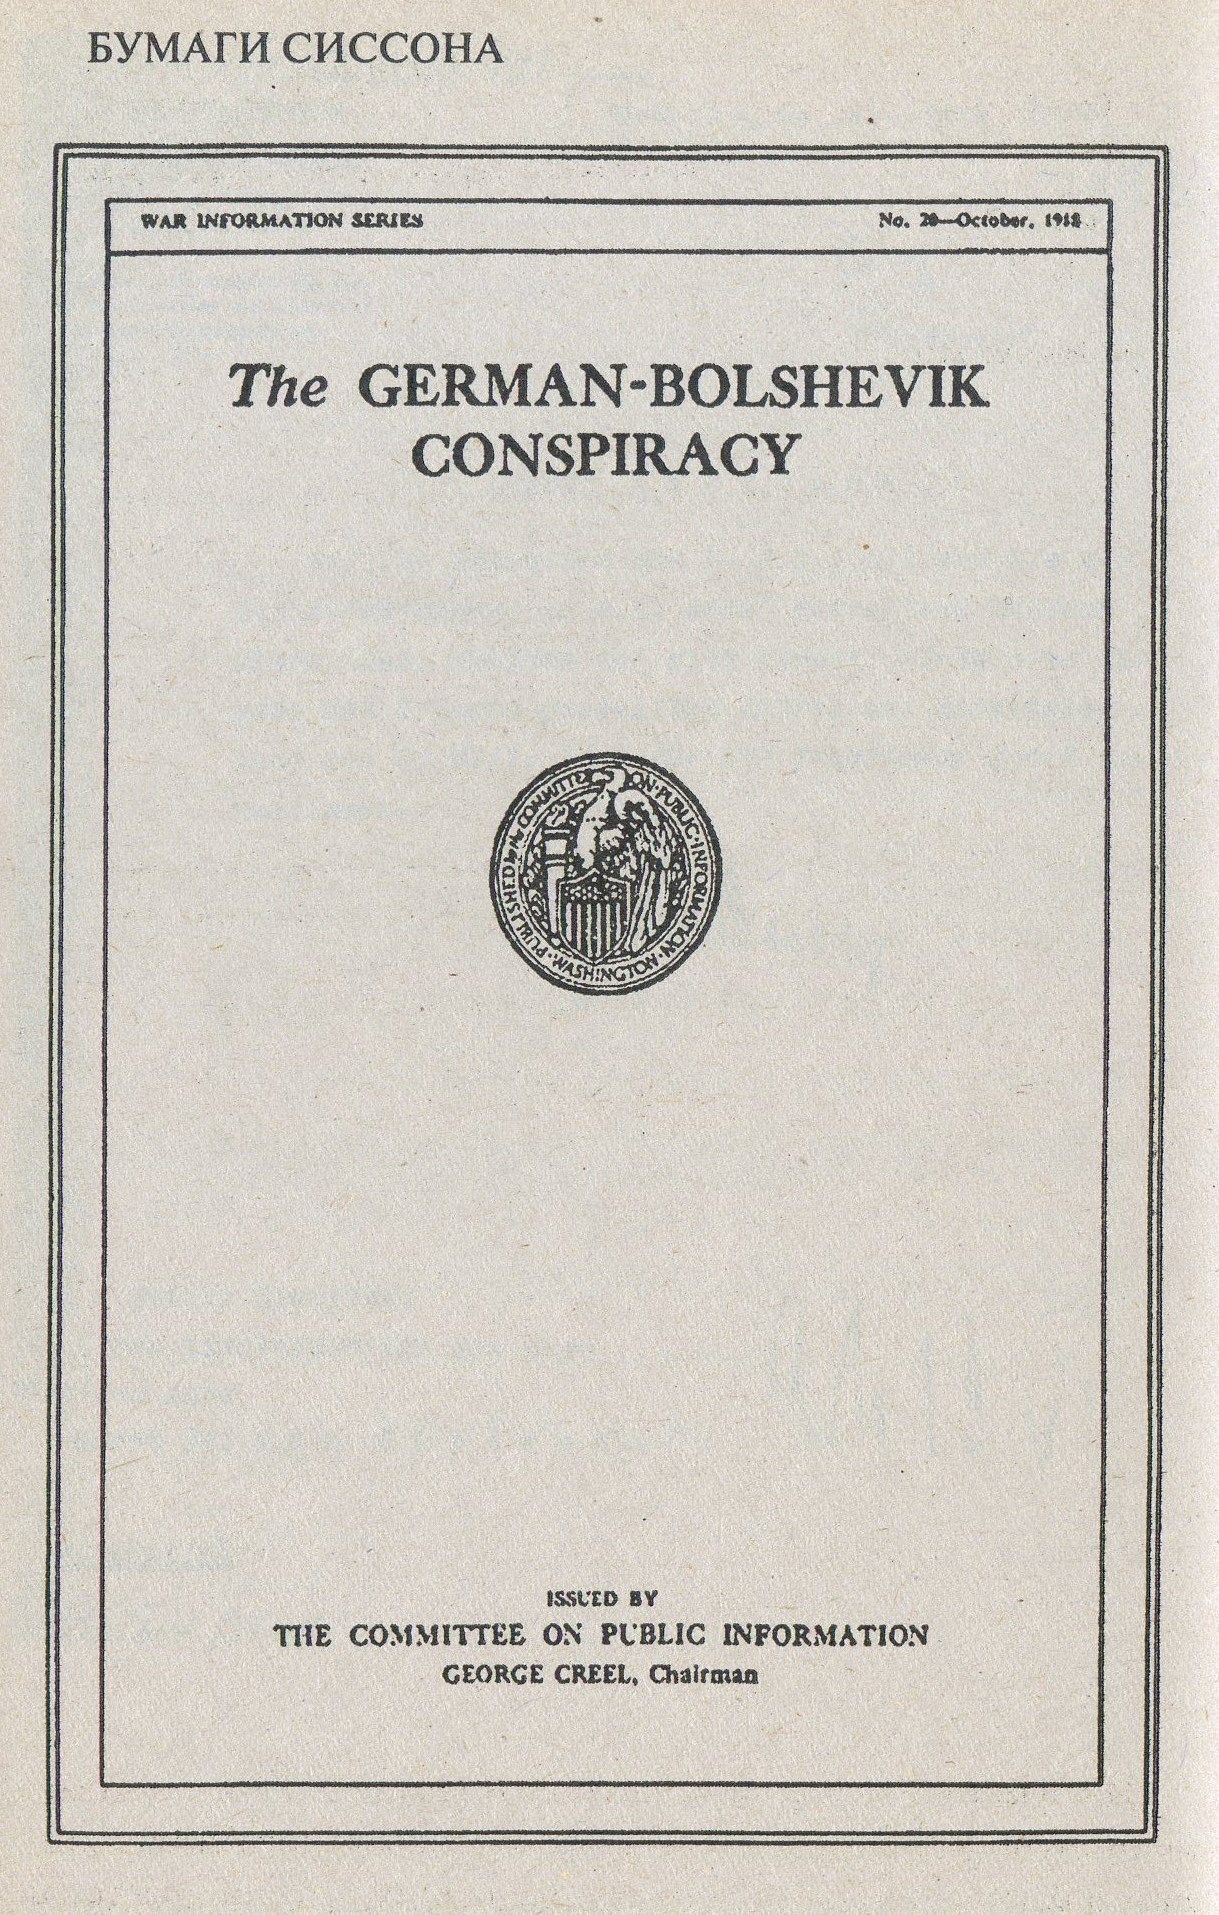 Титульная страница бумаг Сиссона о «германо-большевистском заговоре».